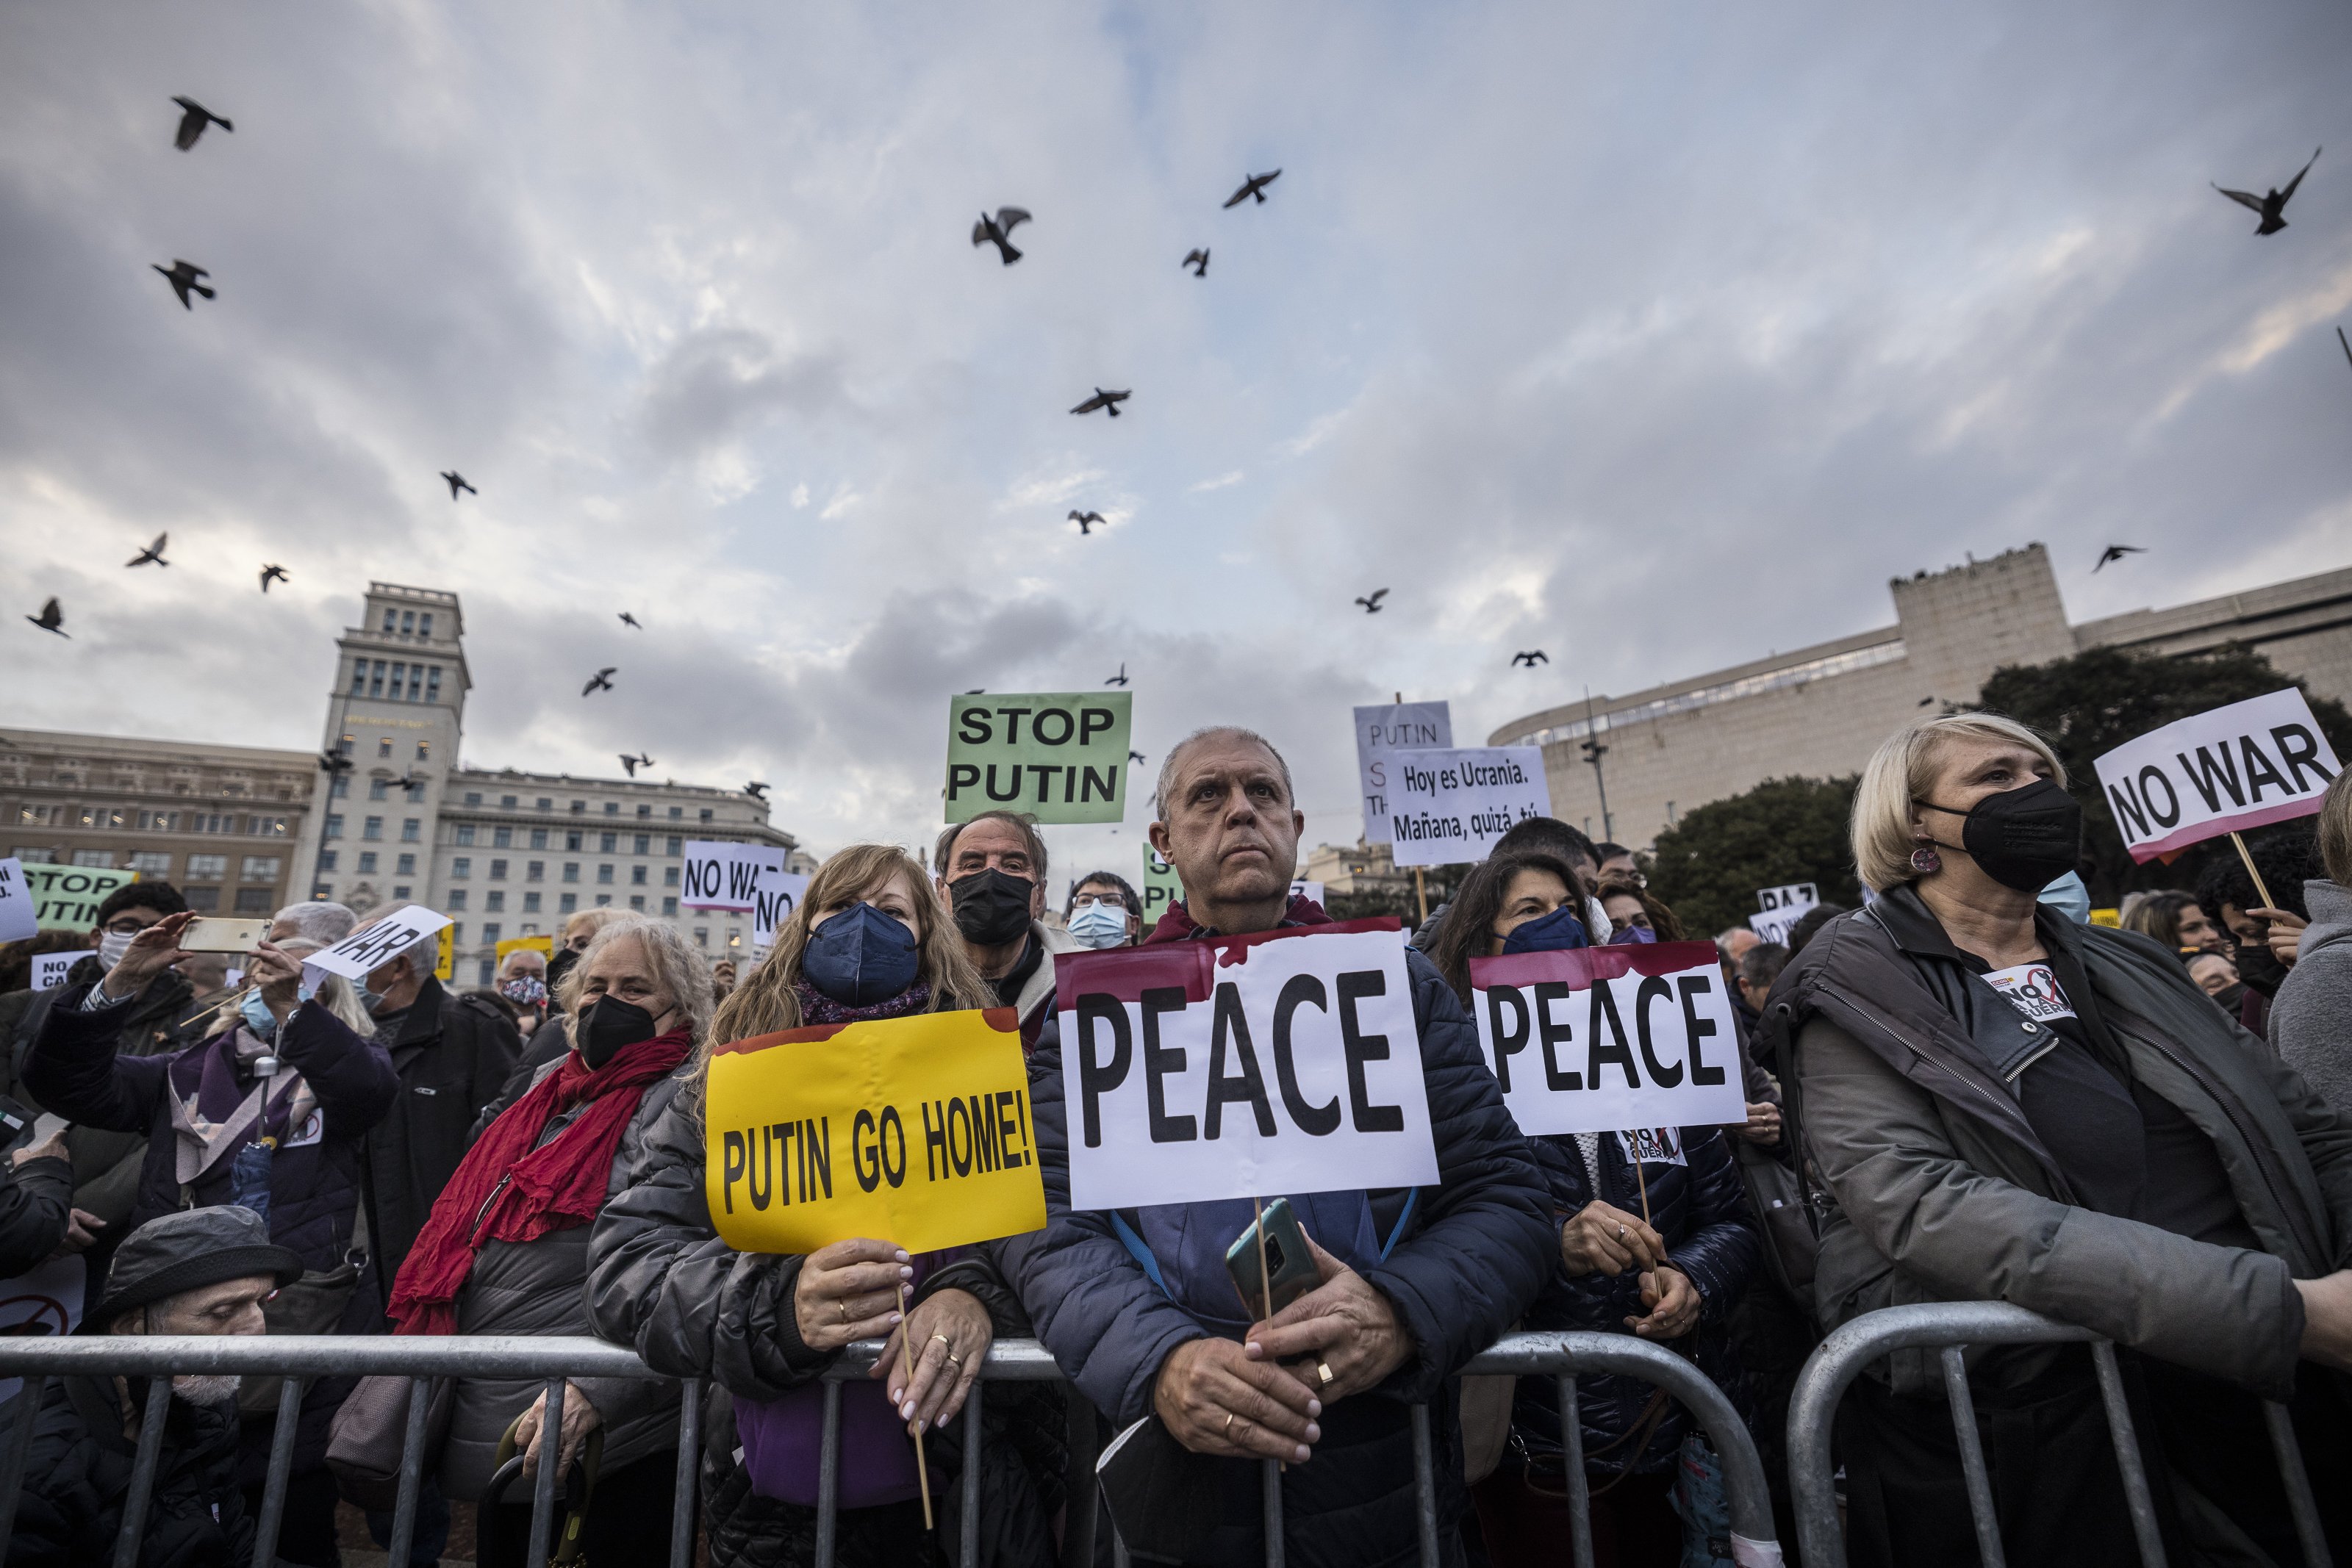 Barcelona clama contra la guerra en Ucrania: "La paz es el camino"